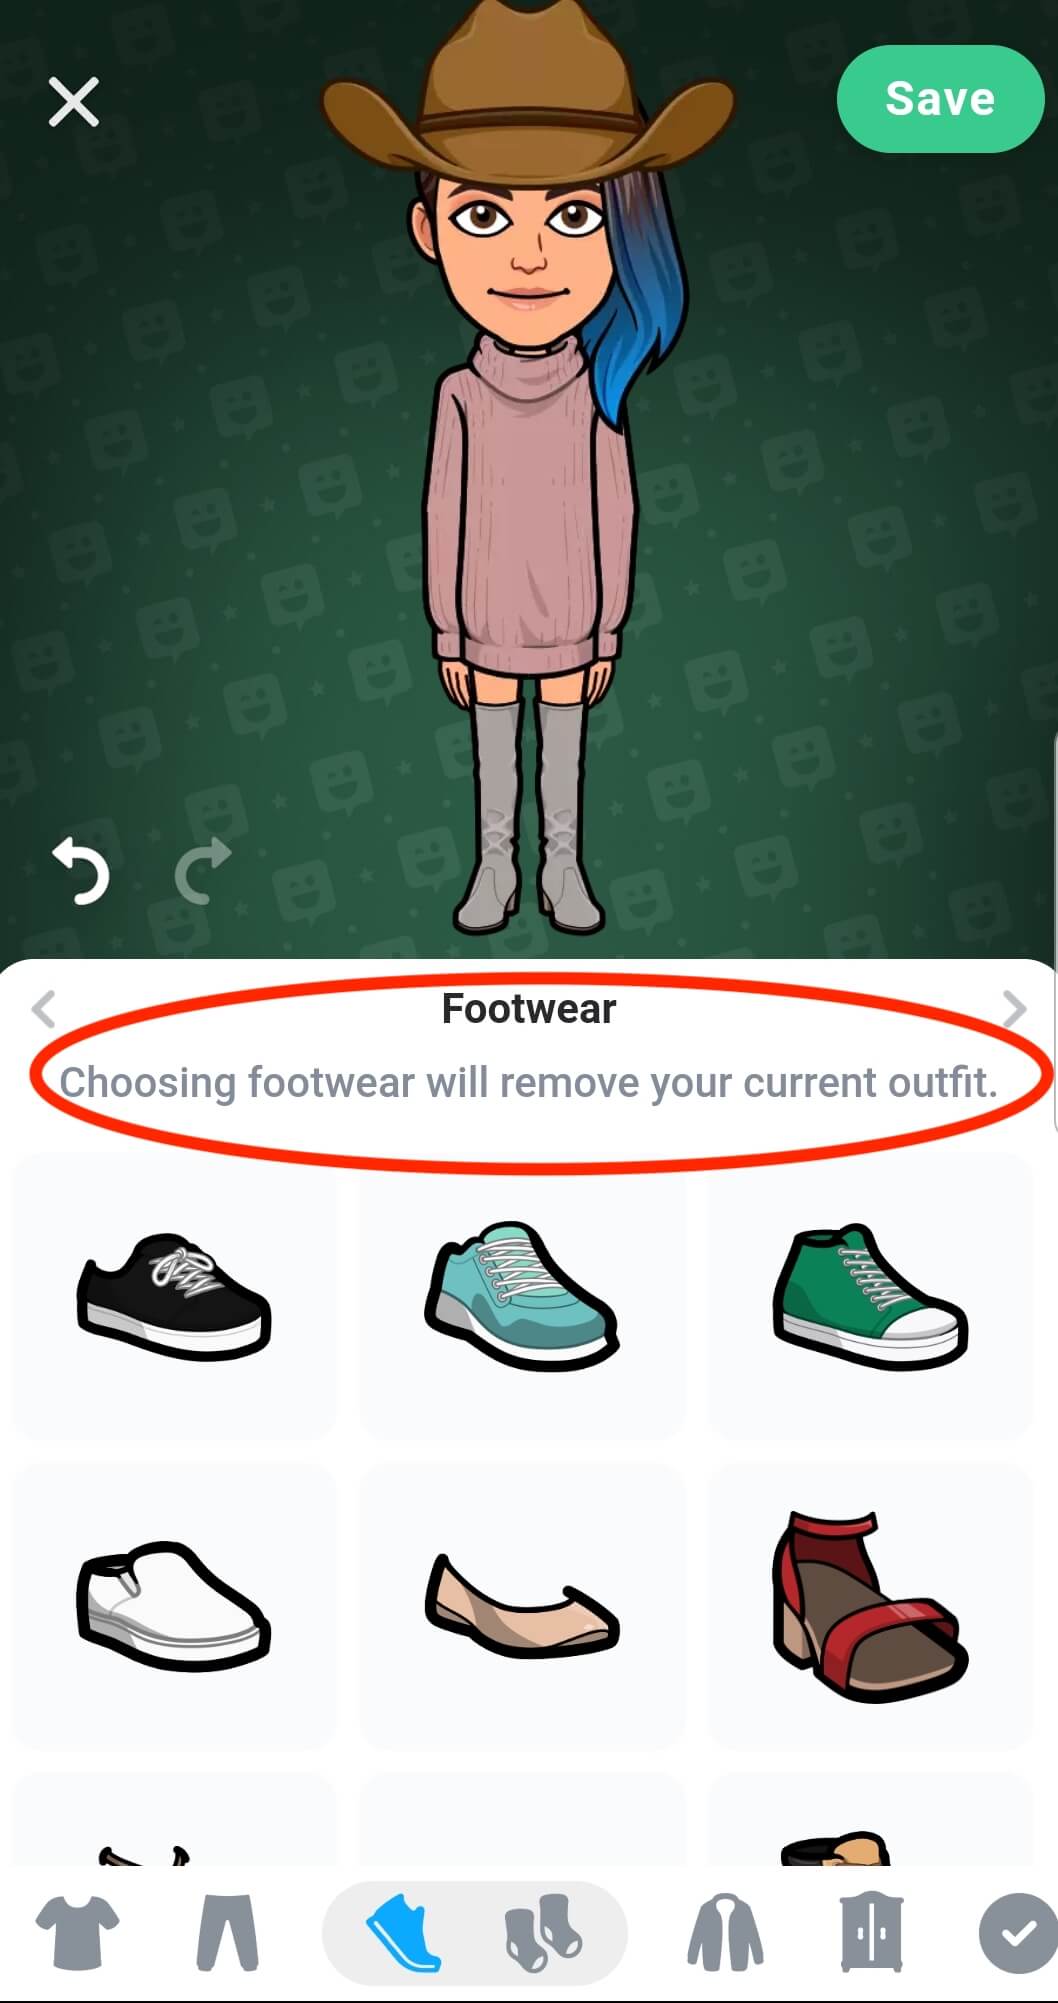 el avatar aparece en la parte superior con un atuendo que no se puede personalizar. Abajo aparece una advertencia: "Si eliges un artículo personalizable, se eliminará el atuendo que llevas puesto".